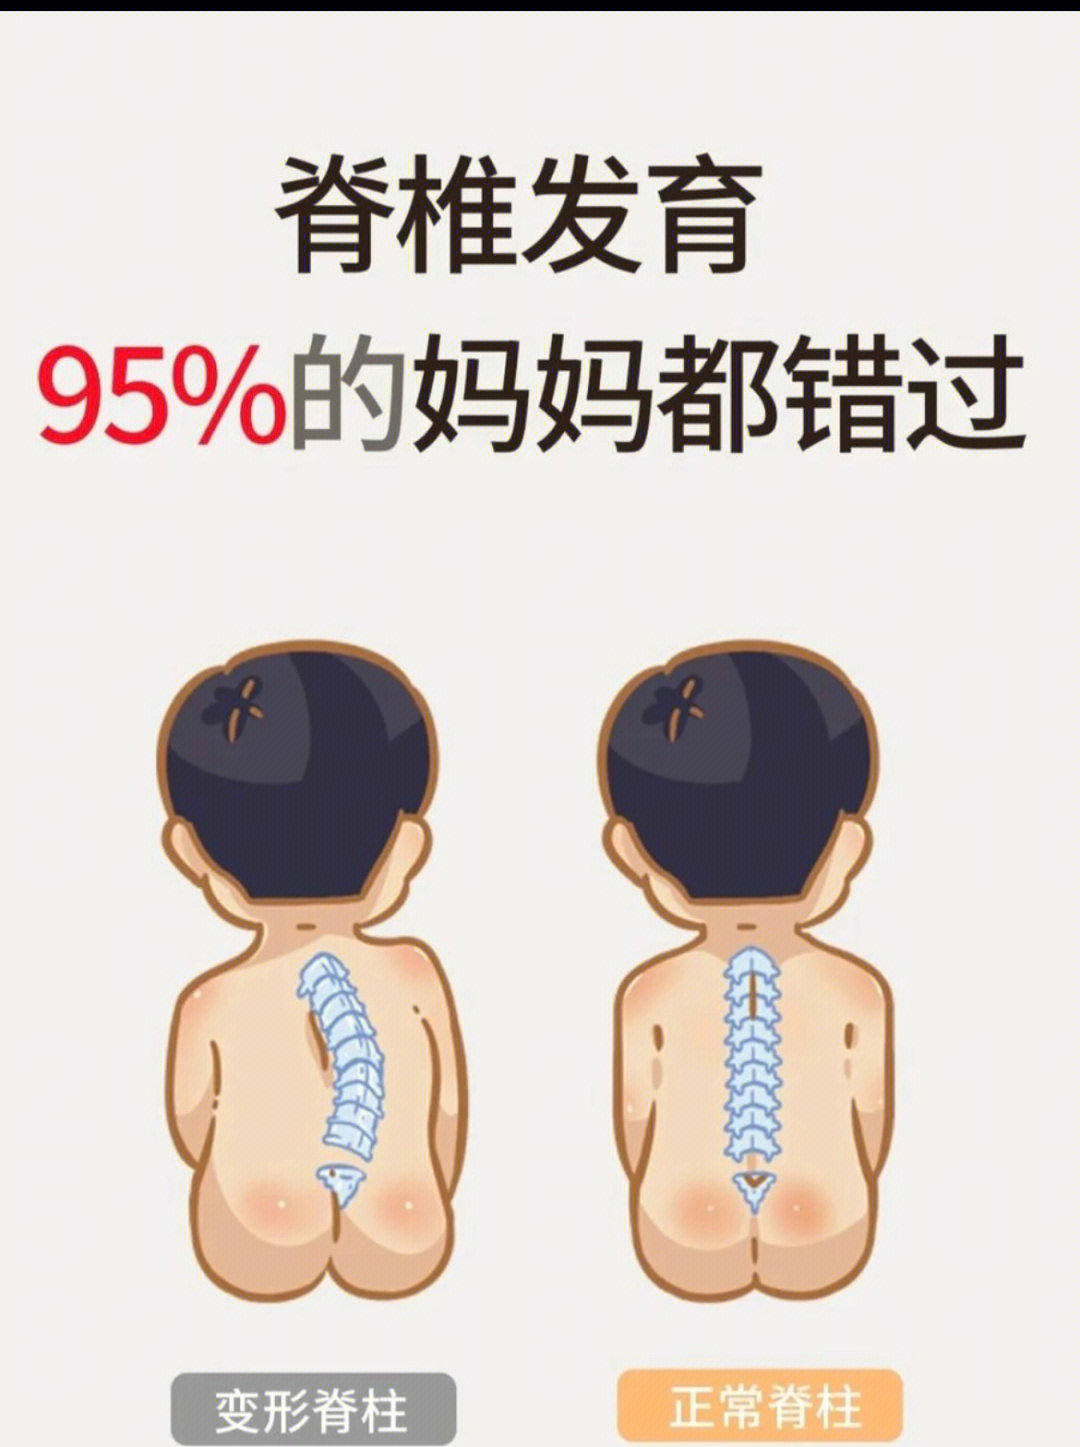 4%的儿童出现脊柱变形.